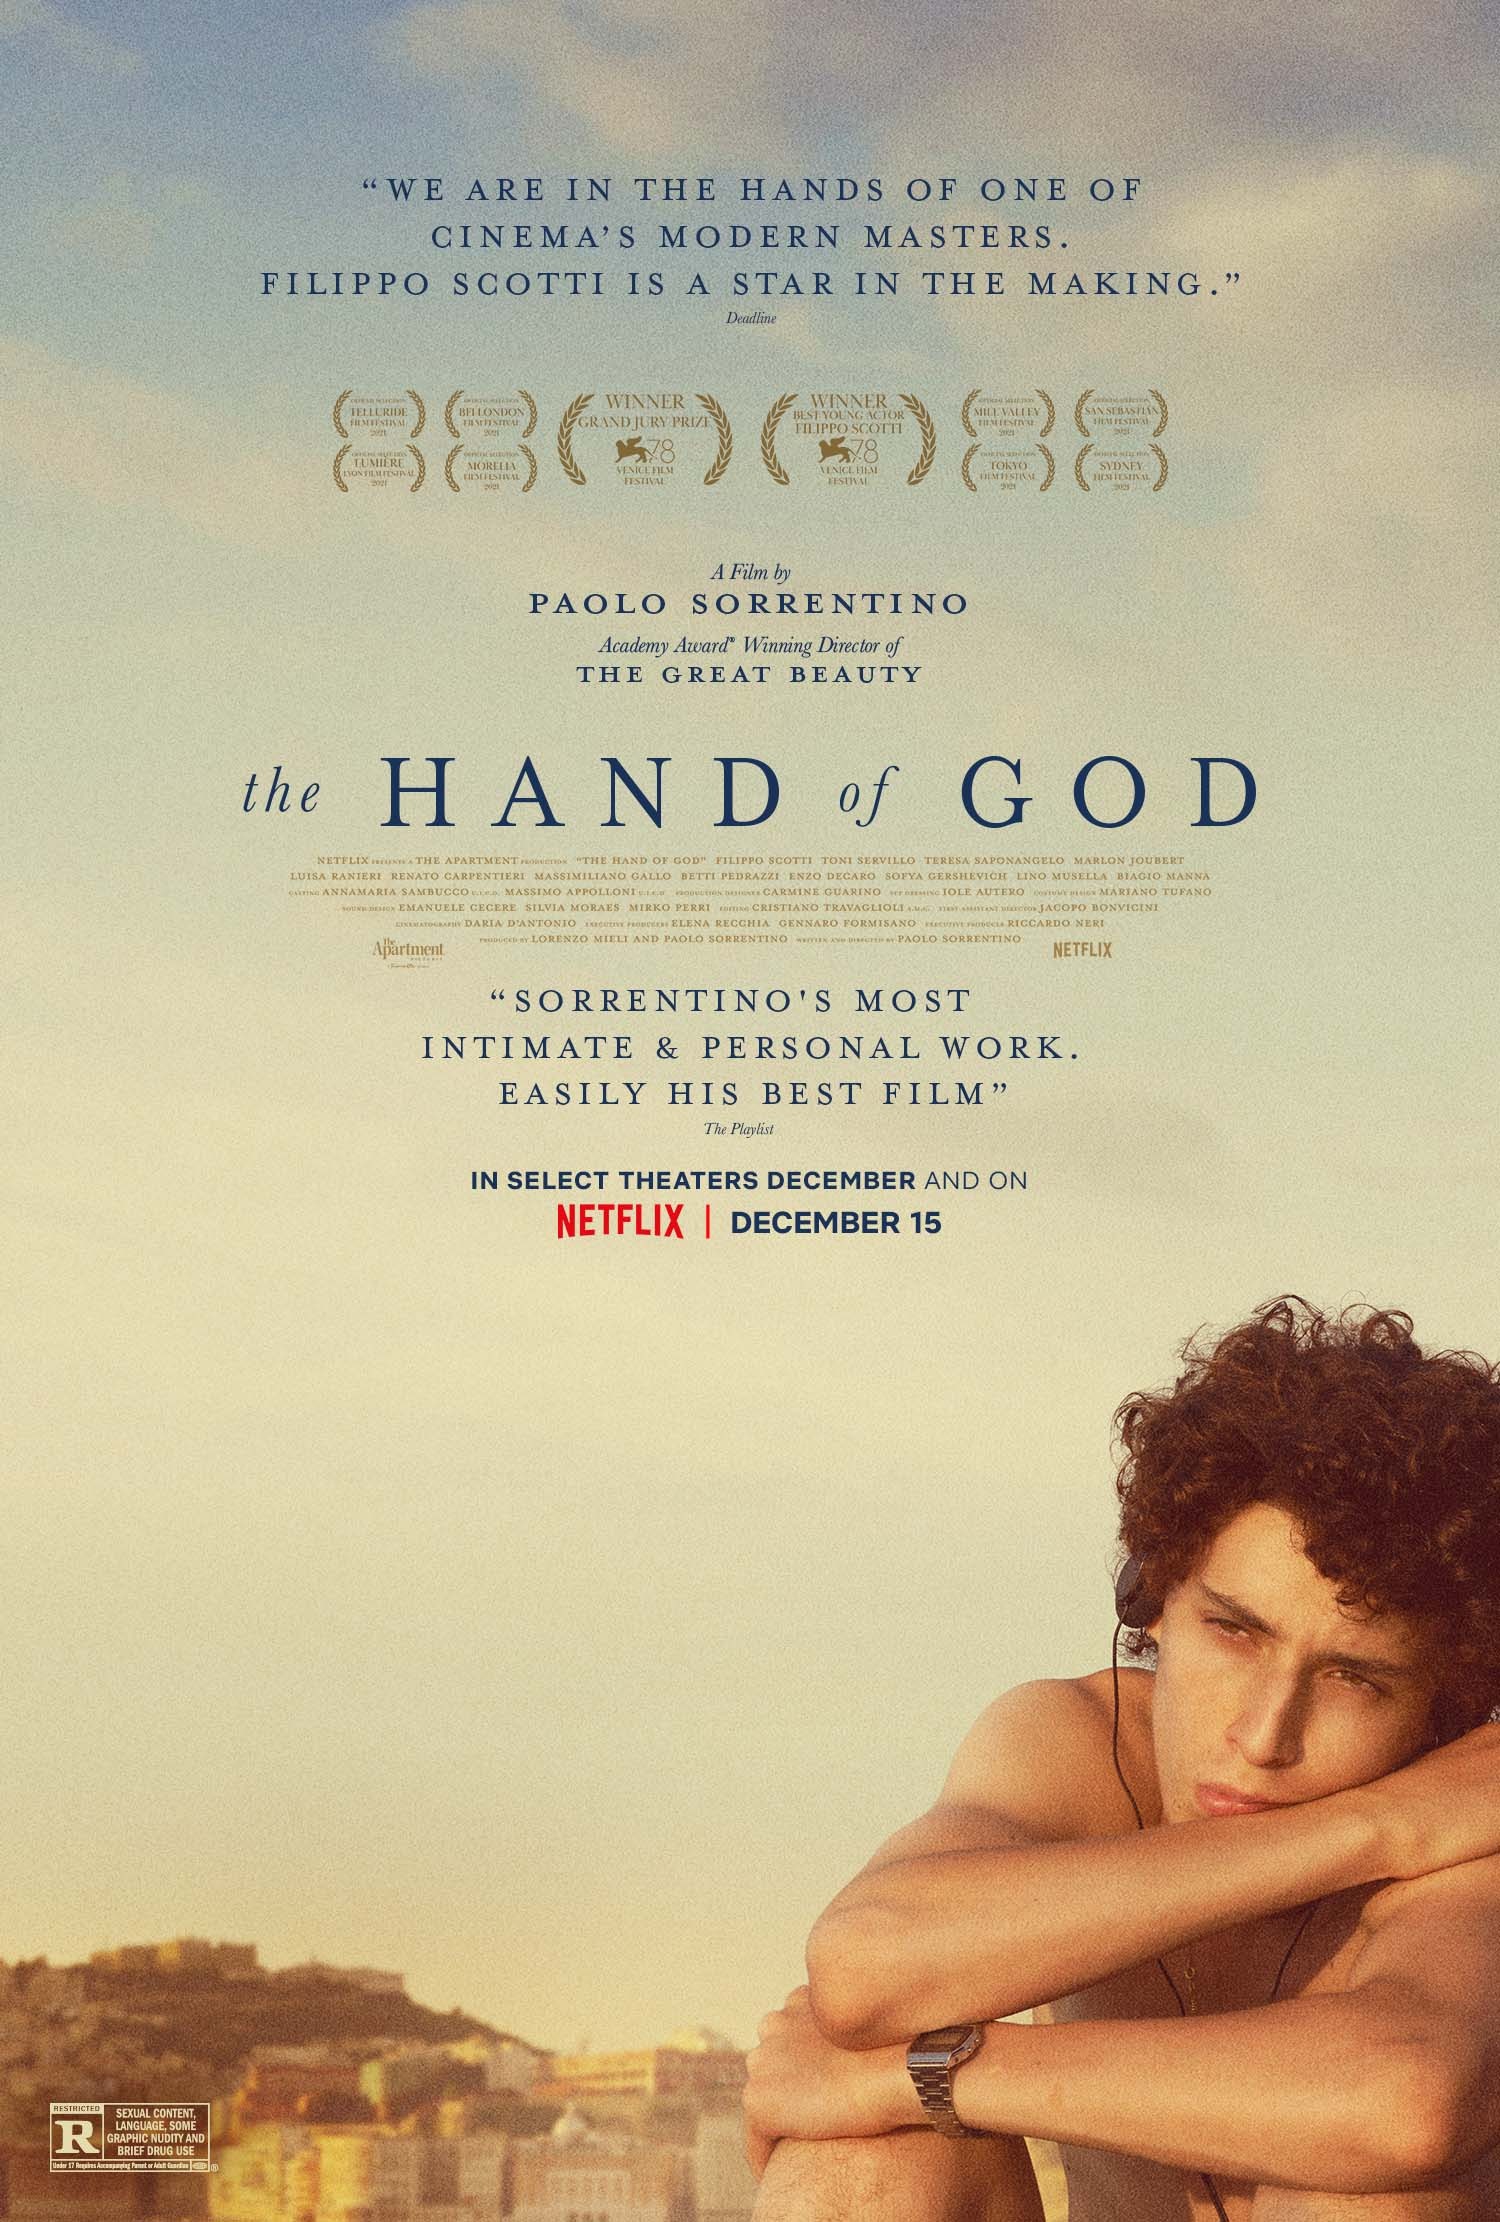 Mega Sized Movie Poster Image for È stata la mano di Dio (#5 of 5)